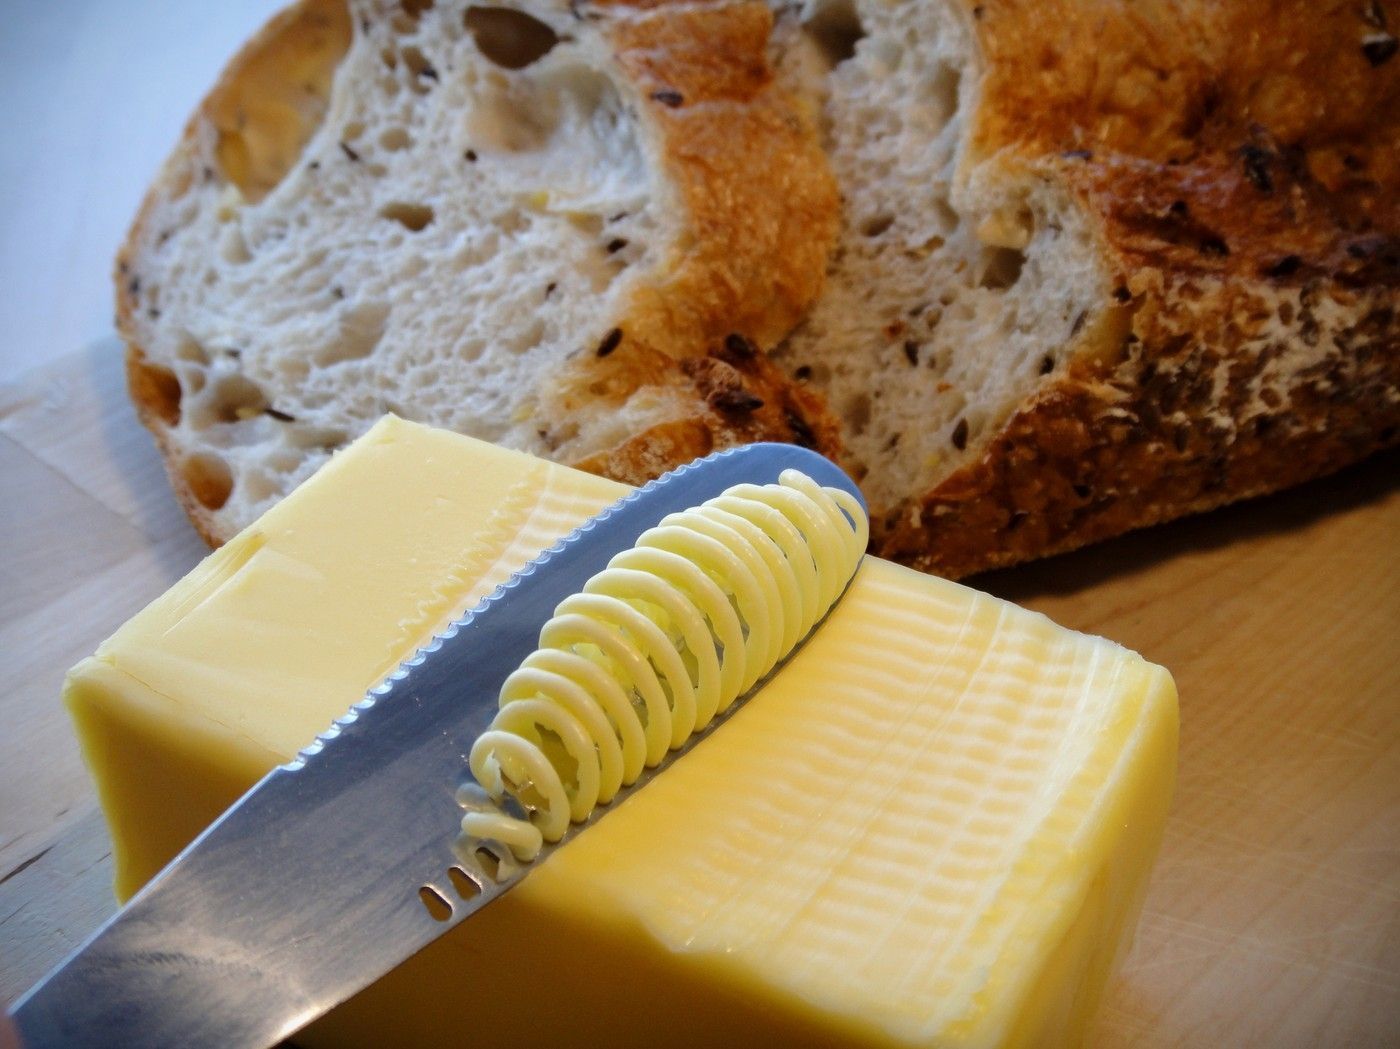 Nůž na máslo